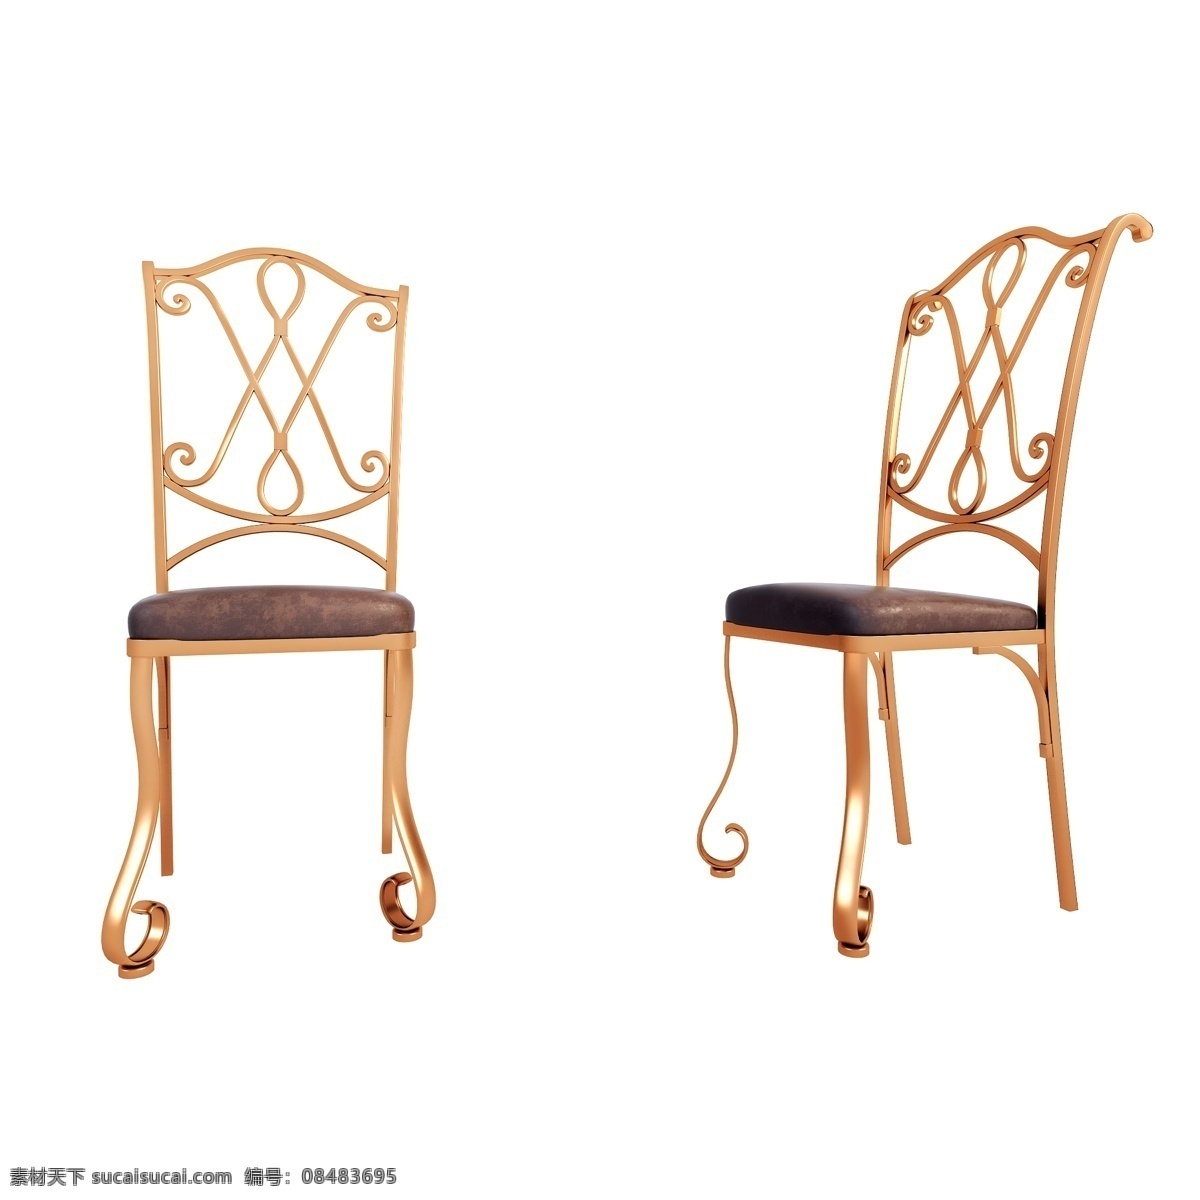 立体 精致 椅子 图 家具 家居 质感 凳子 铁艺 欧式 镀金 仿真 3d 创意 套图 png图